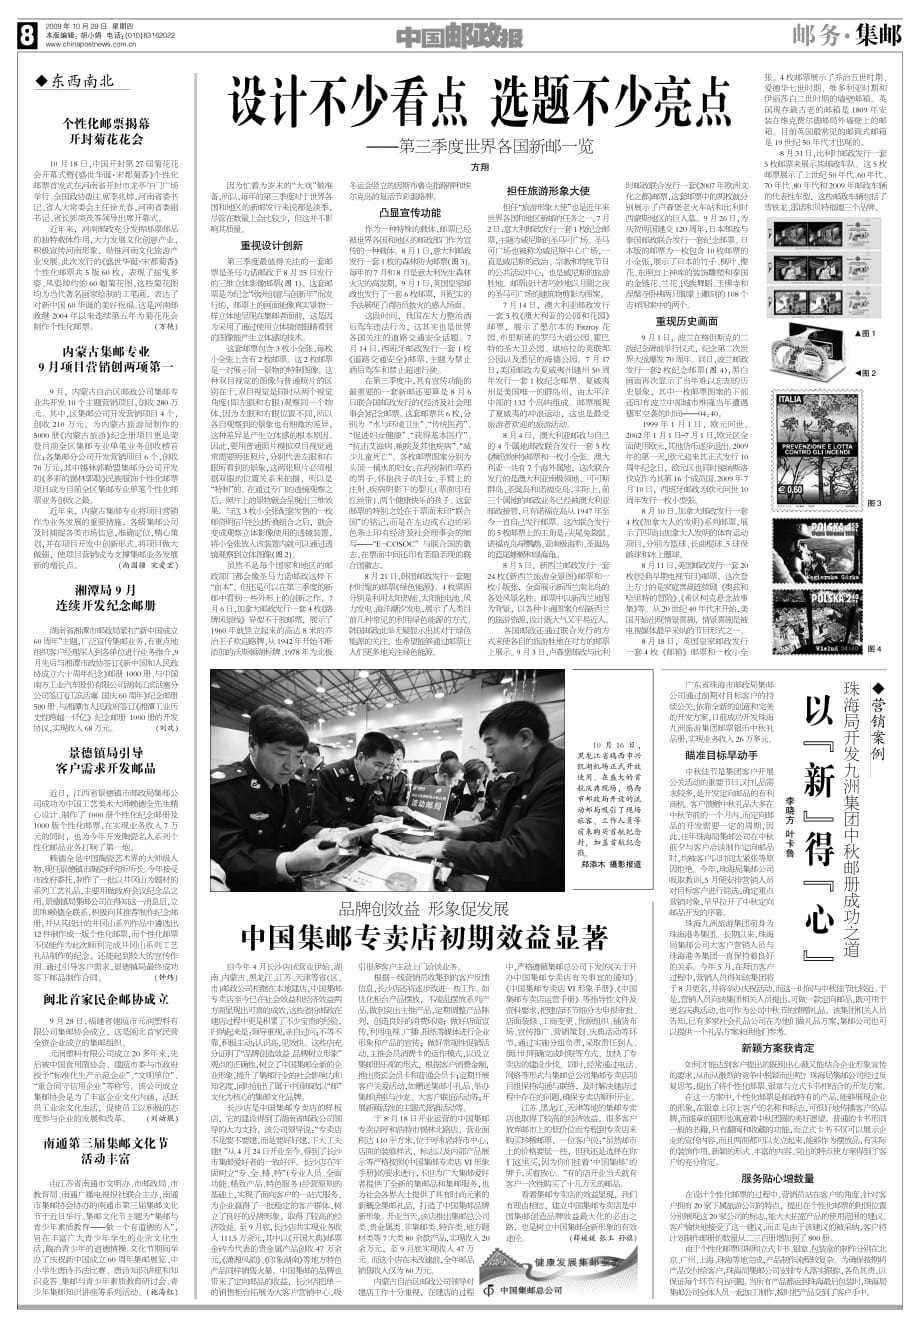 中国邮政报091029邮务-集邮_第1页